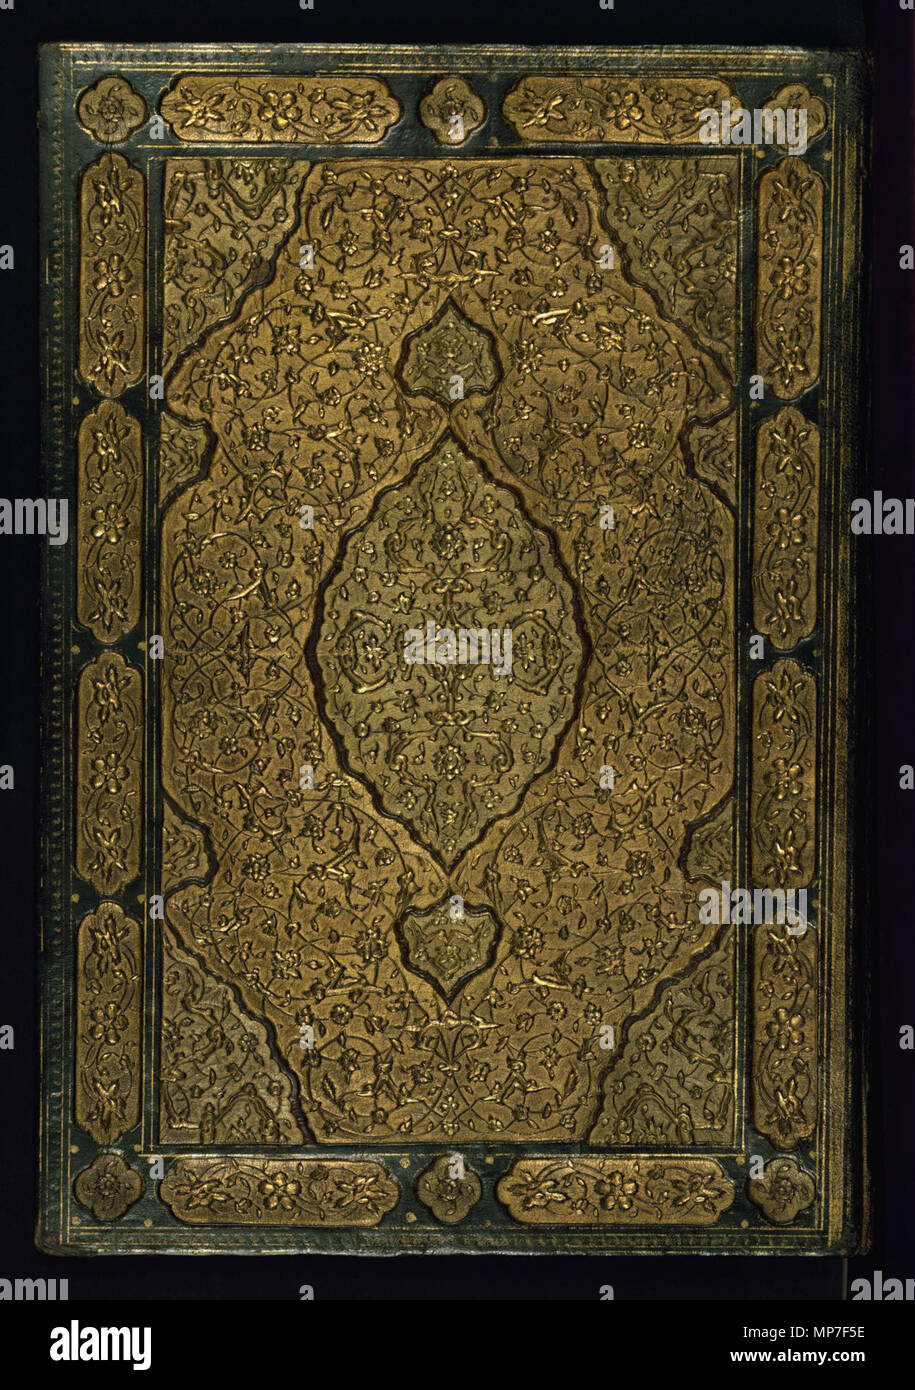 À partir de la liaison de deux Œuvres de Sa'di : La Roseraie (Gulistan) et le verger (Bustan). Anglais : Walters manuscrit W.619 est lié dans une reliure en cuir d'origine (avec un rabat). La reliure a dentelle décorées de style et les conseils de doublures en cuir marron avec de l'or en filigrane peint à travailler sur un terrain multi-couleur de bleu, vert, rouge et noir. . 1572 Hijri历 (AD980) (période safavide (1501-1722)). 676 - Reliure islamique à partir de deux Œuvres de Sa'di - La Roseraie (Gulistan) et le verger (Bustan) - Walters W619reliure - Extérieur Haut Banque D'Images